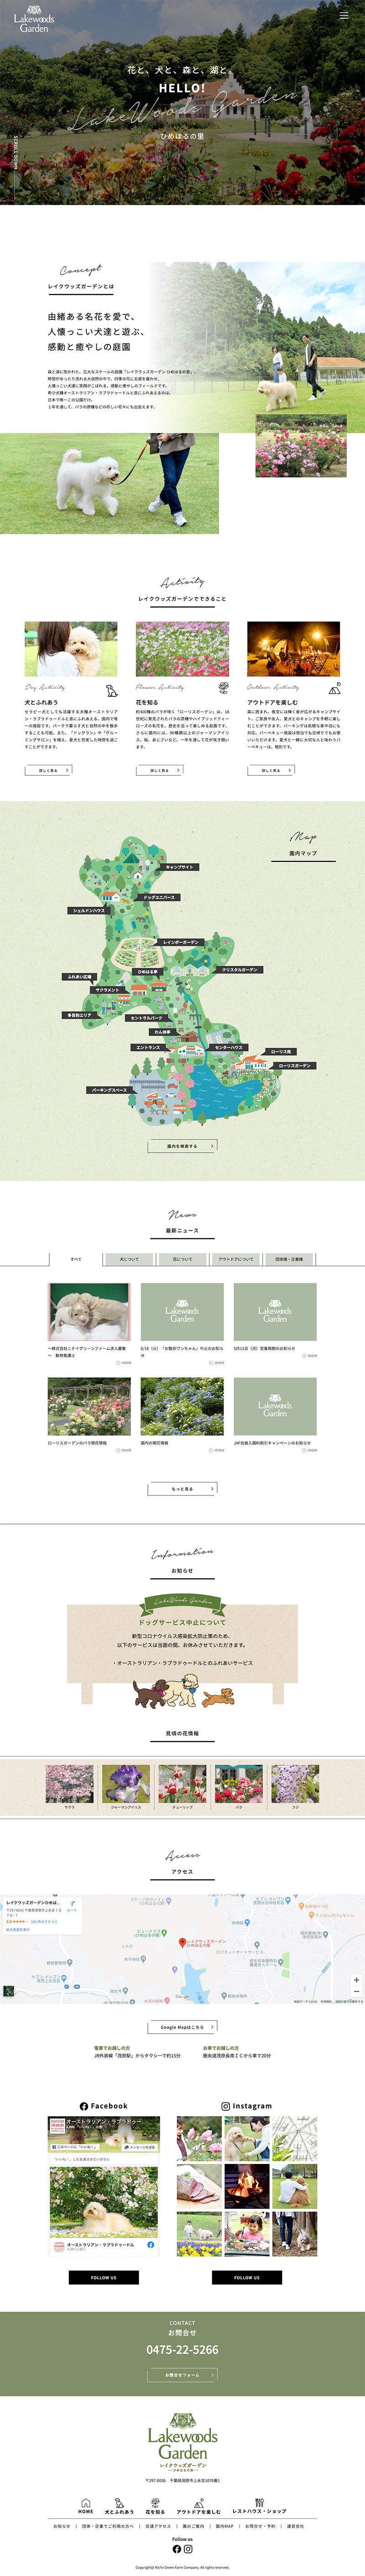 犬と花のテーマパーク「レイクウッズガーデン」の特設サイトTOP